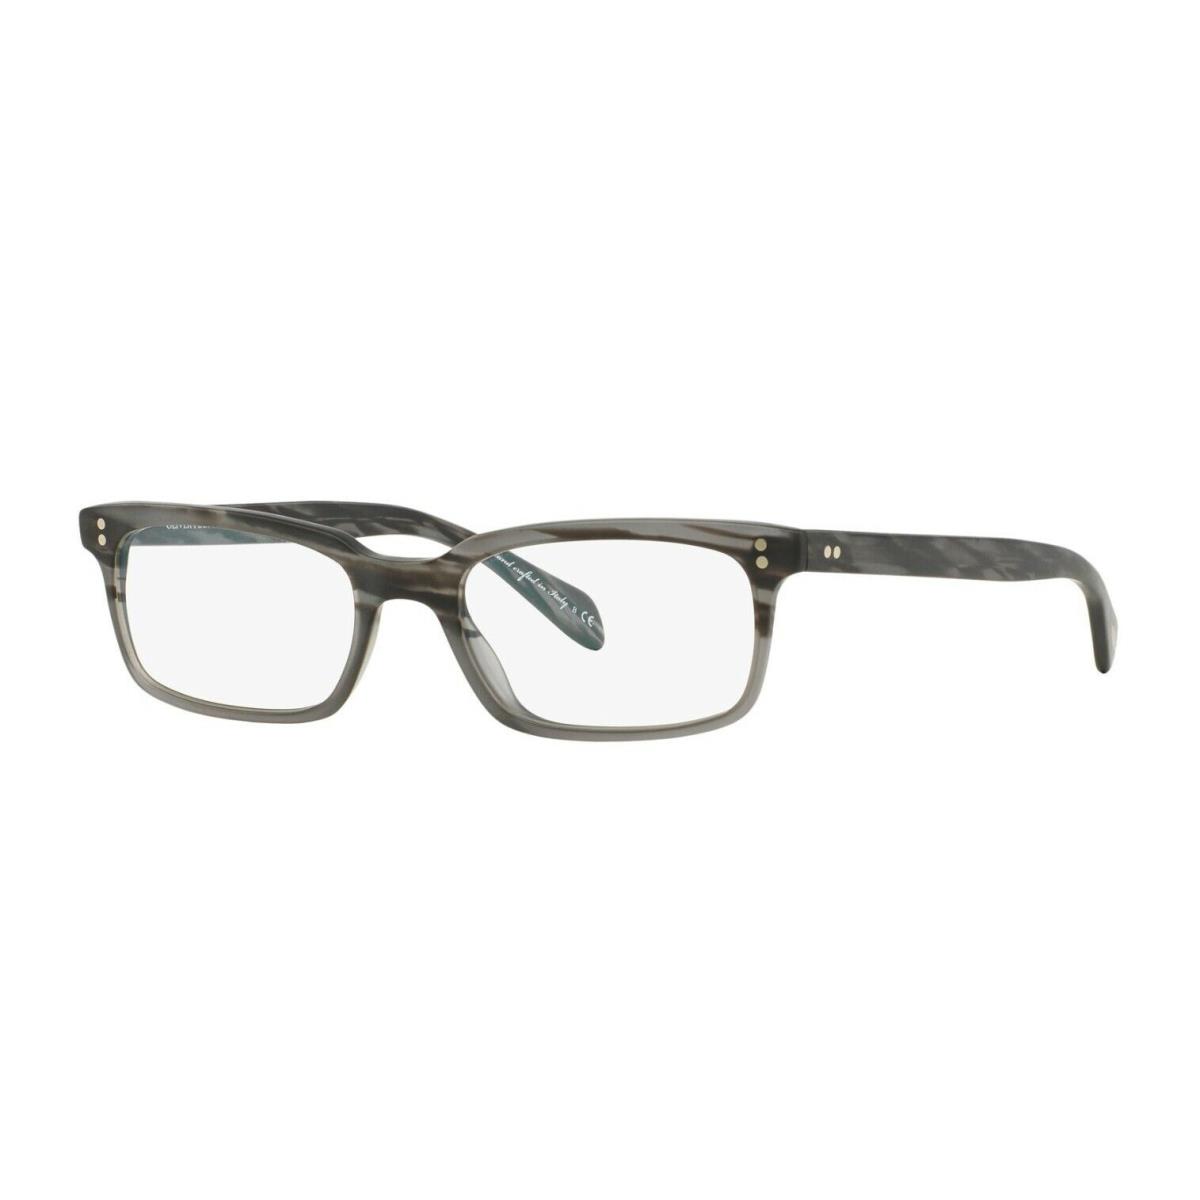 Oliver Peoples Denison OV 5102 Matte Storm 1124 Eyeglasses - Frame: